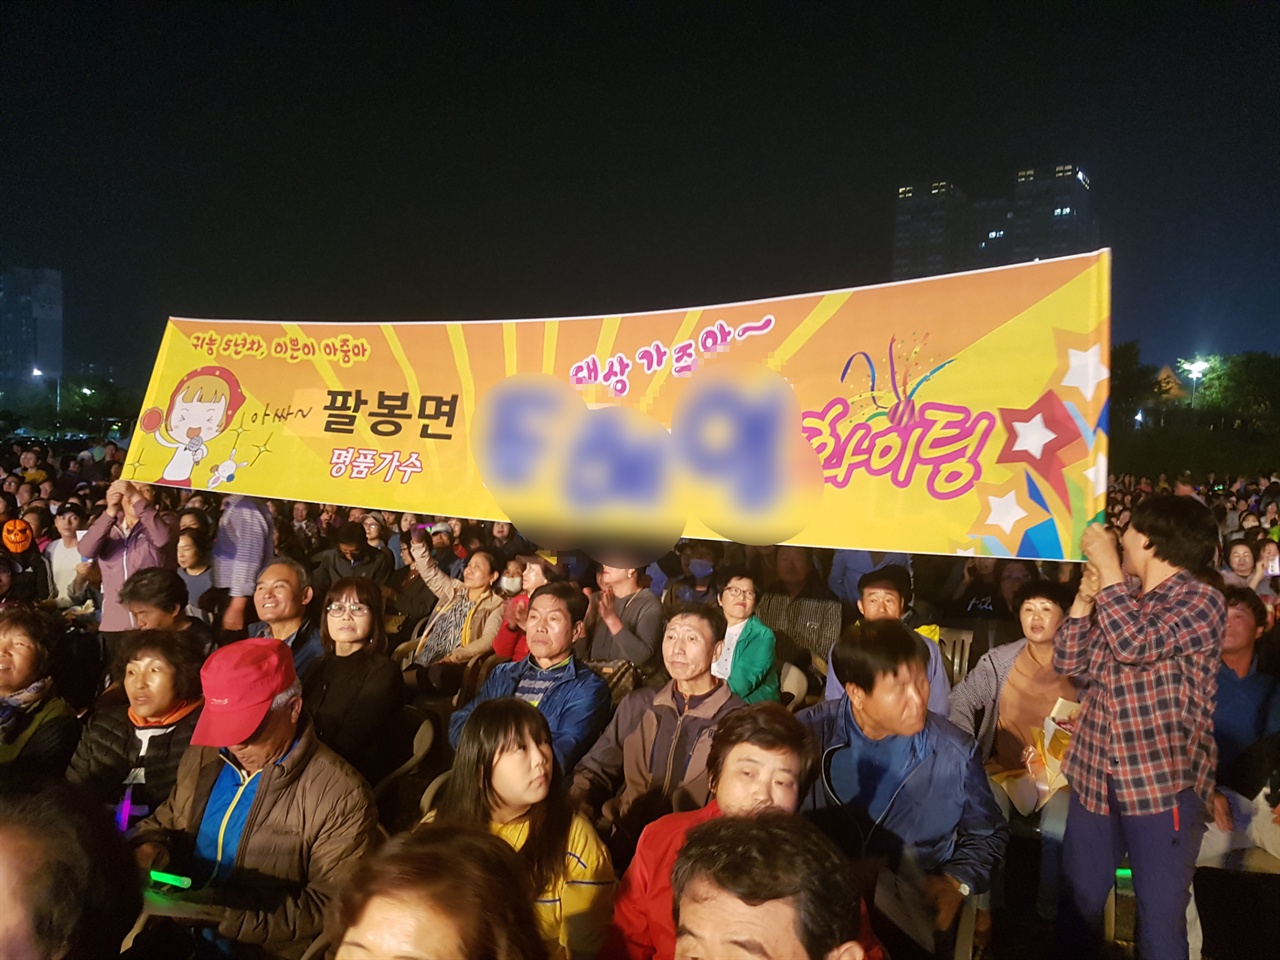 이 자리에 참석한 시민들은 자신들 지역을 대표하는 가수(?)가 무대에 오를 때마다 힘찬 박수와 함성으로 응원했다.